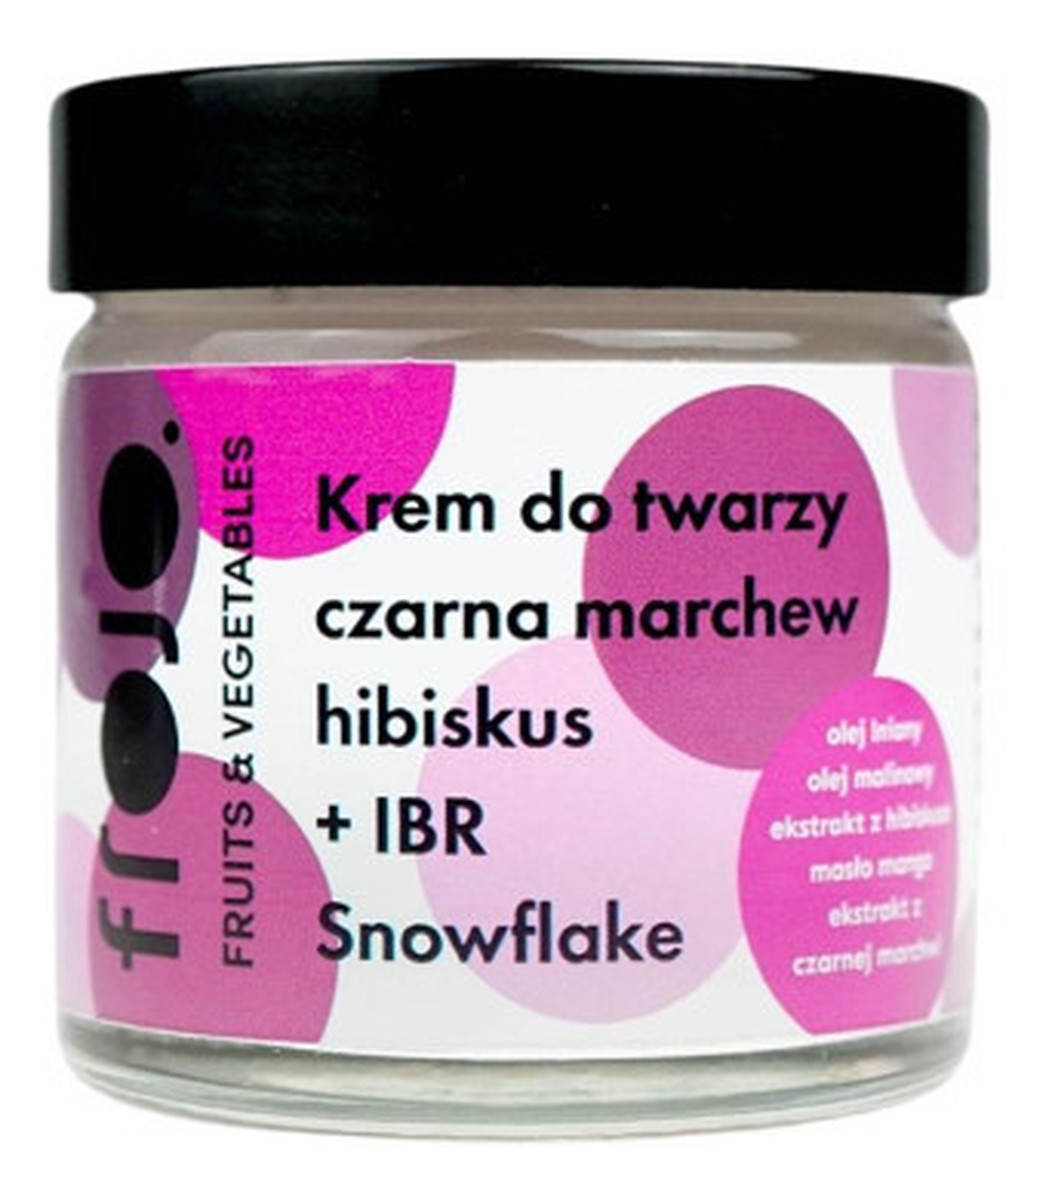 Krem do twarzy Czarna marchew + Hibiskus + IBR Snowflake